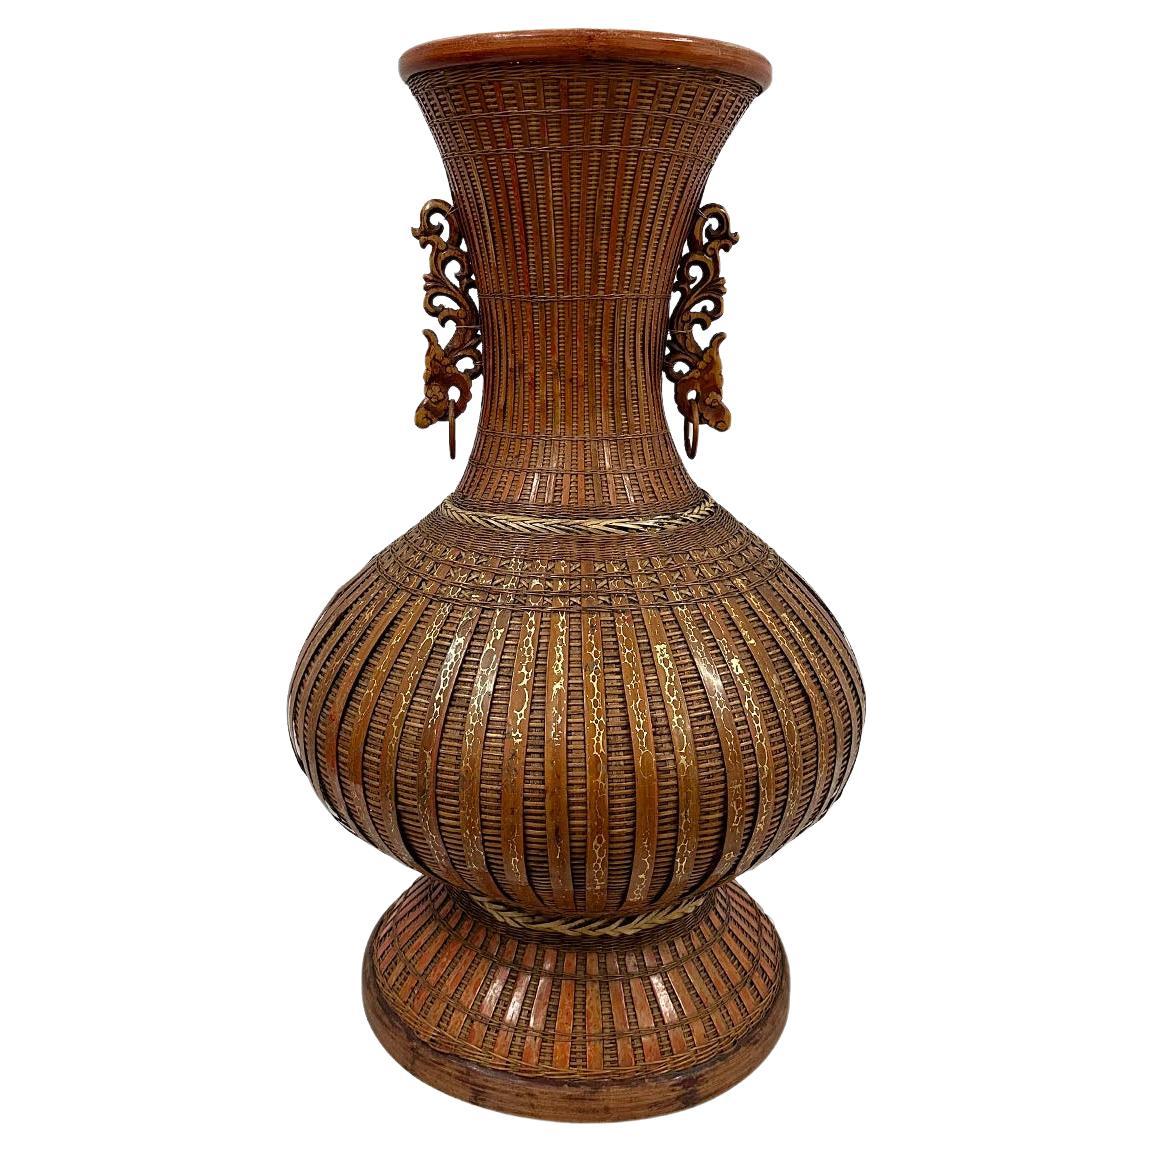 Vase en bambou tressé à la main, Chine, 20e siècle